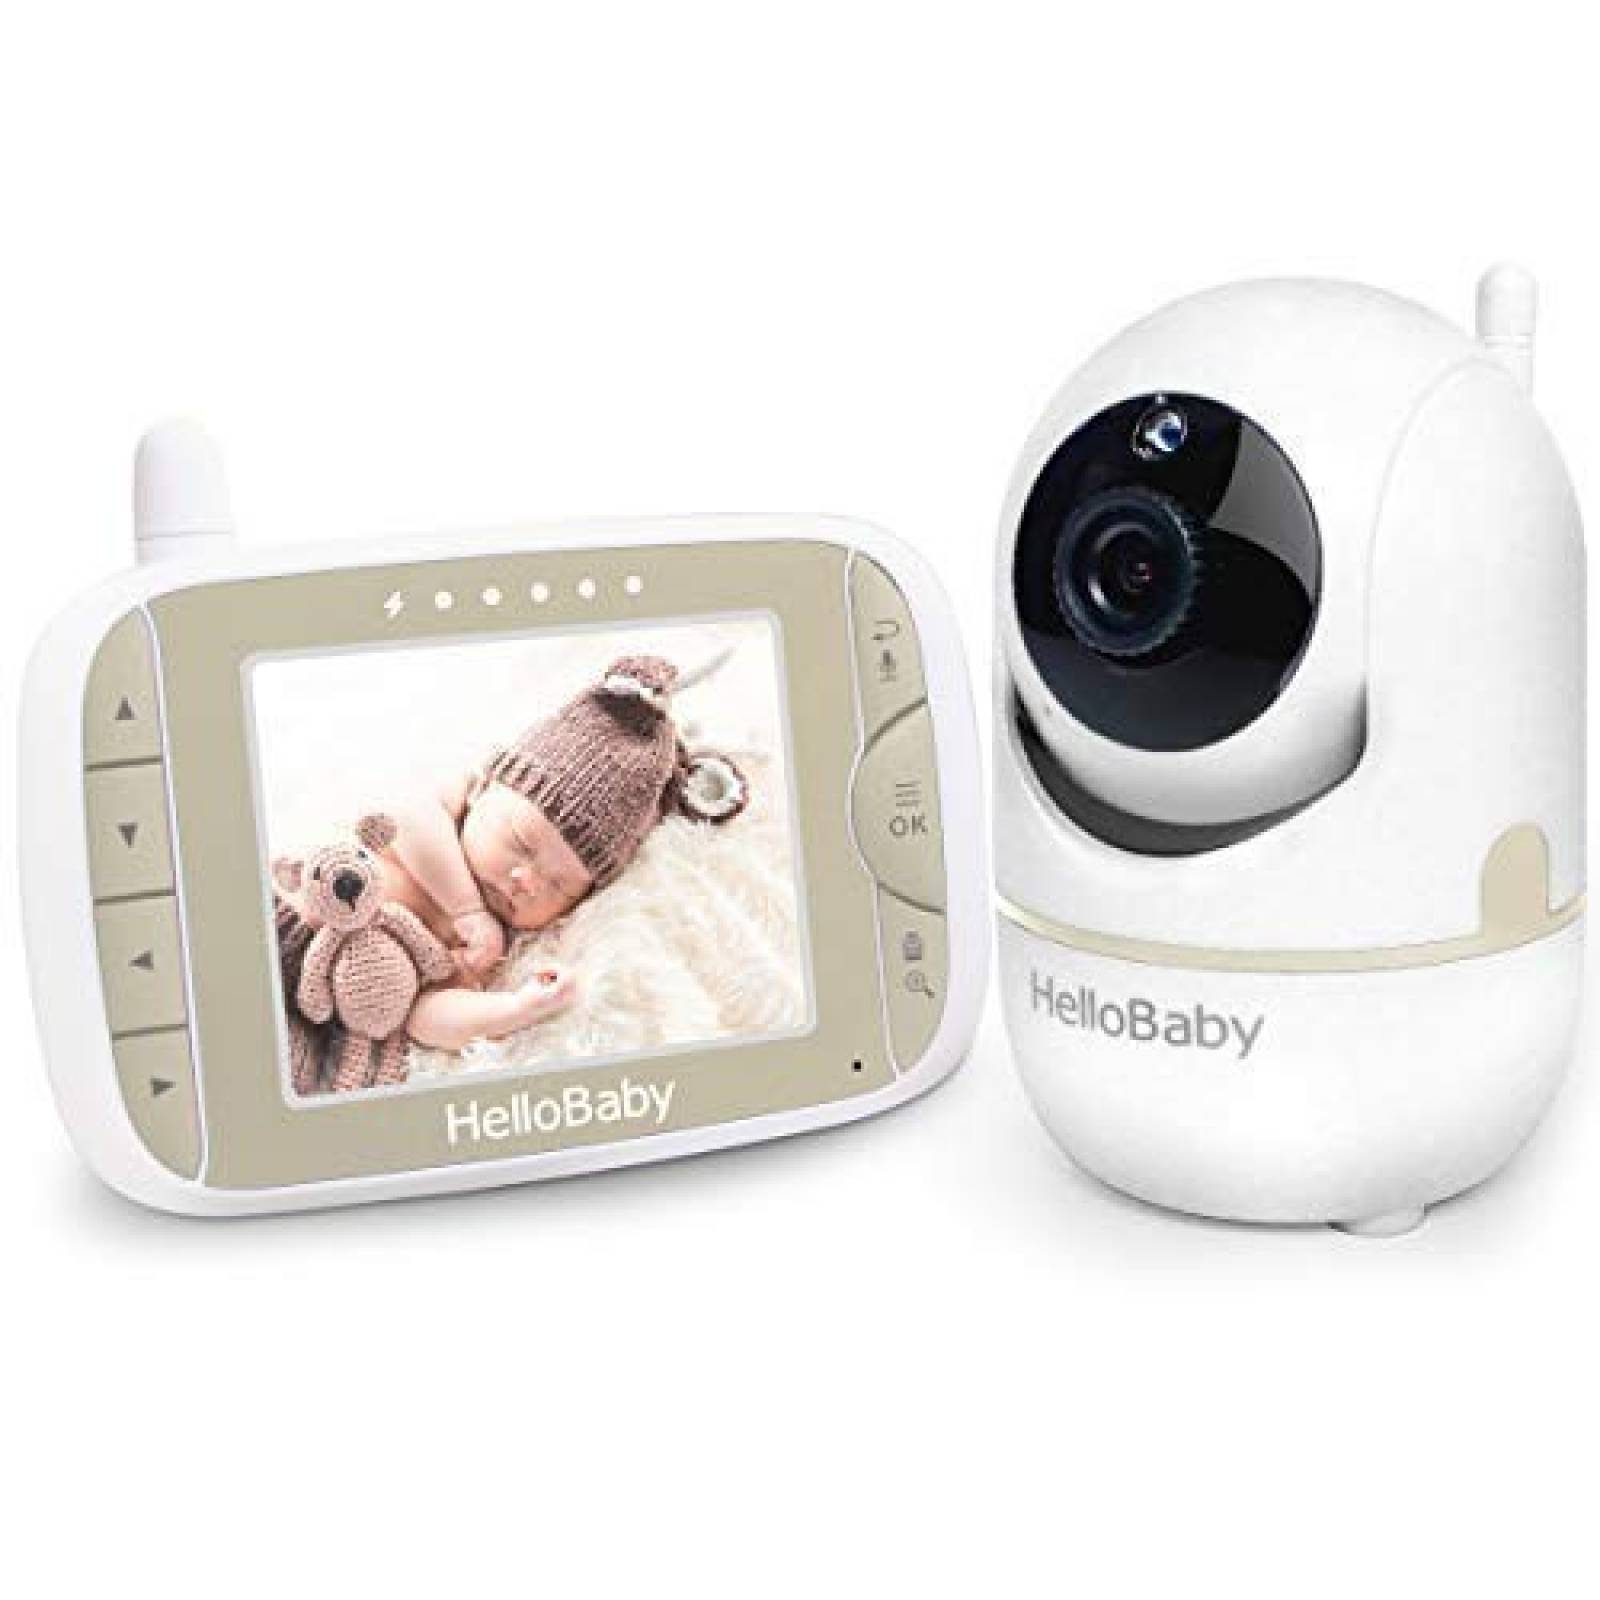 Monitor de bebé Hello Baby pantalla LCD 3.2 pulgadas -Oro